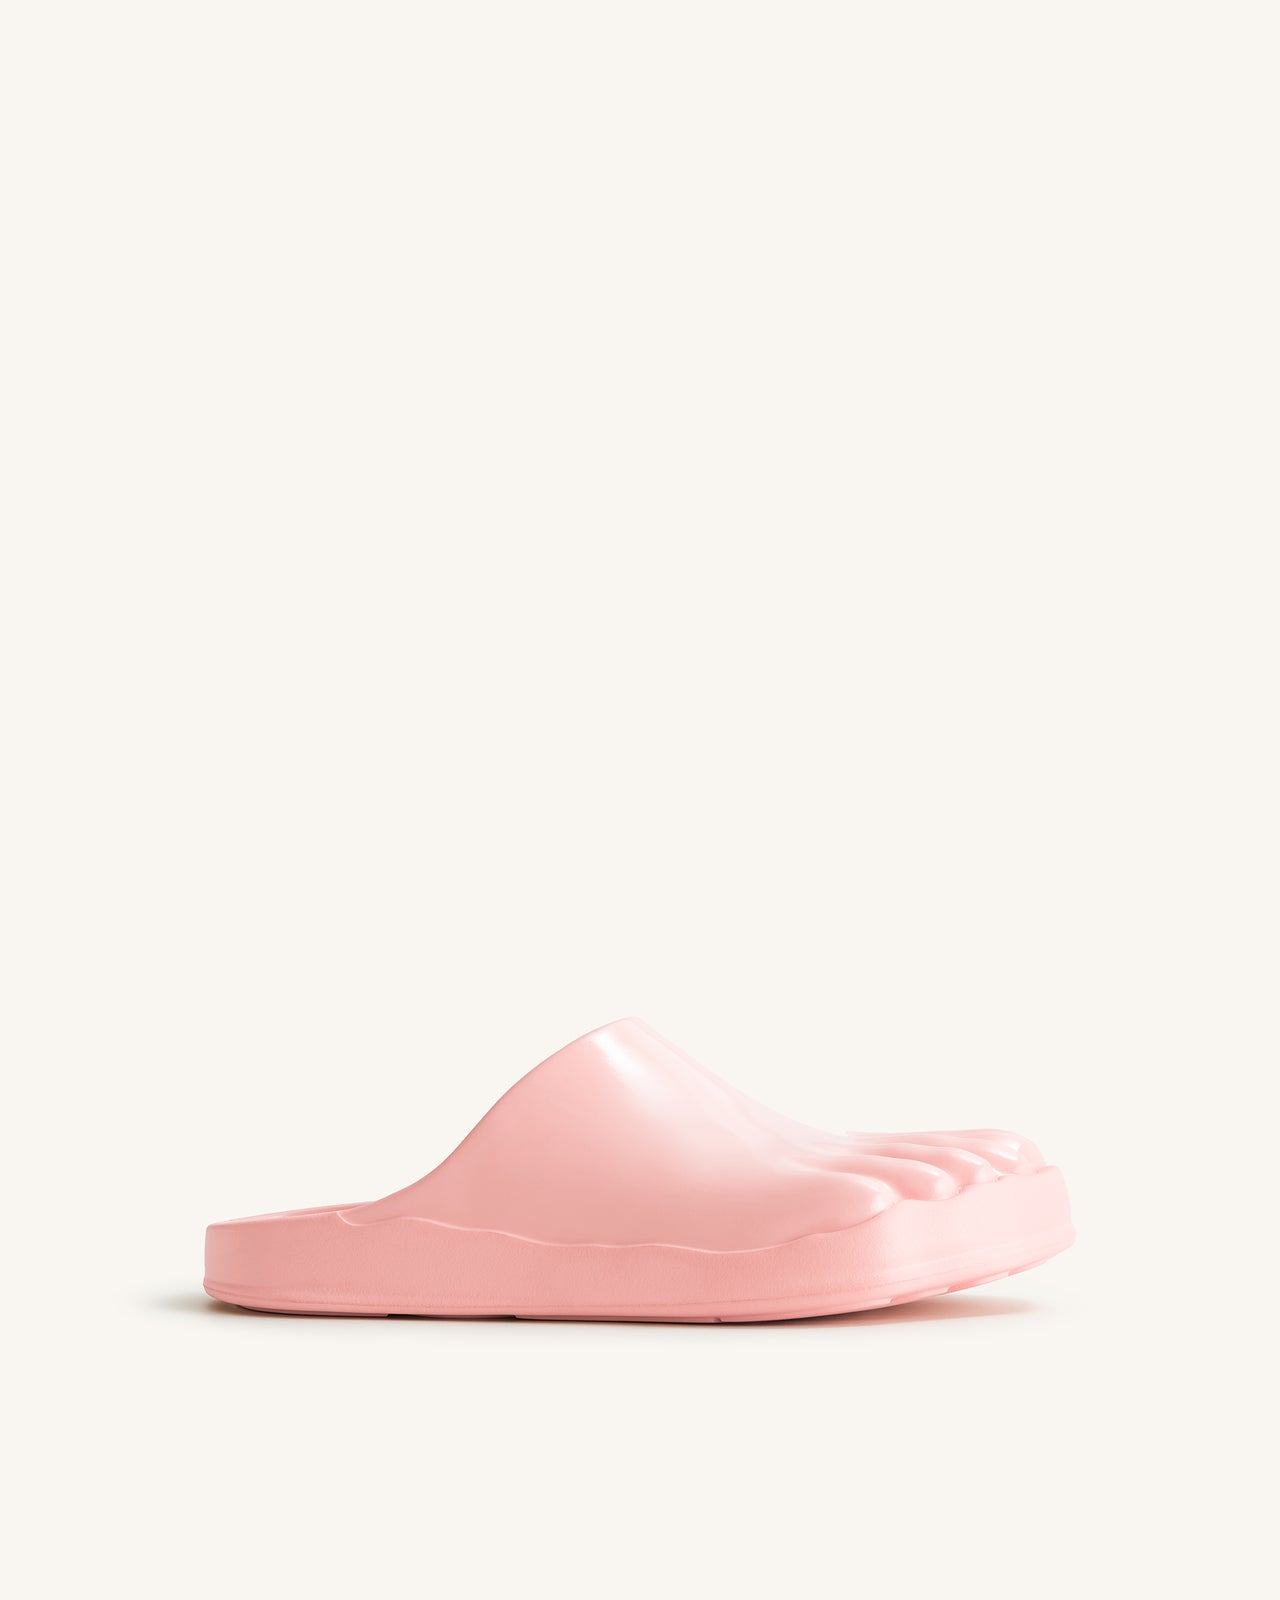 Hayley Toe Model Flat Mules - Pink Beige